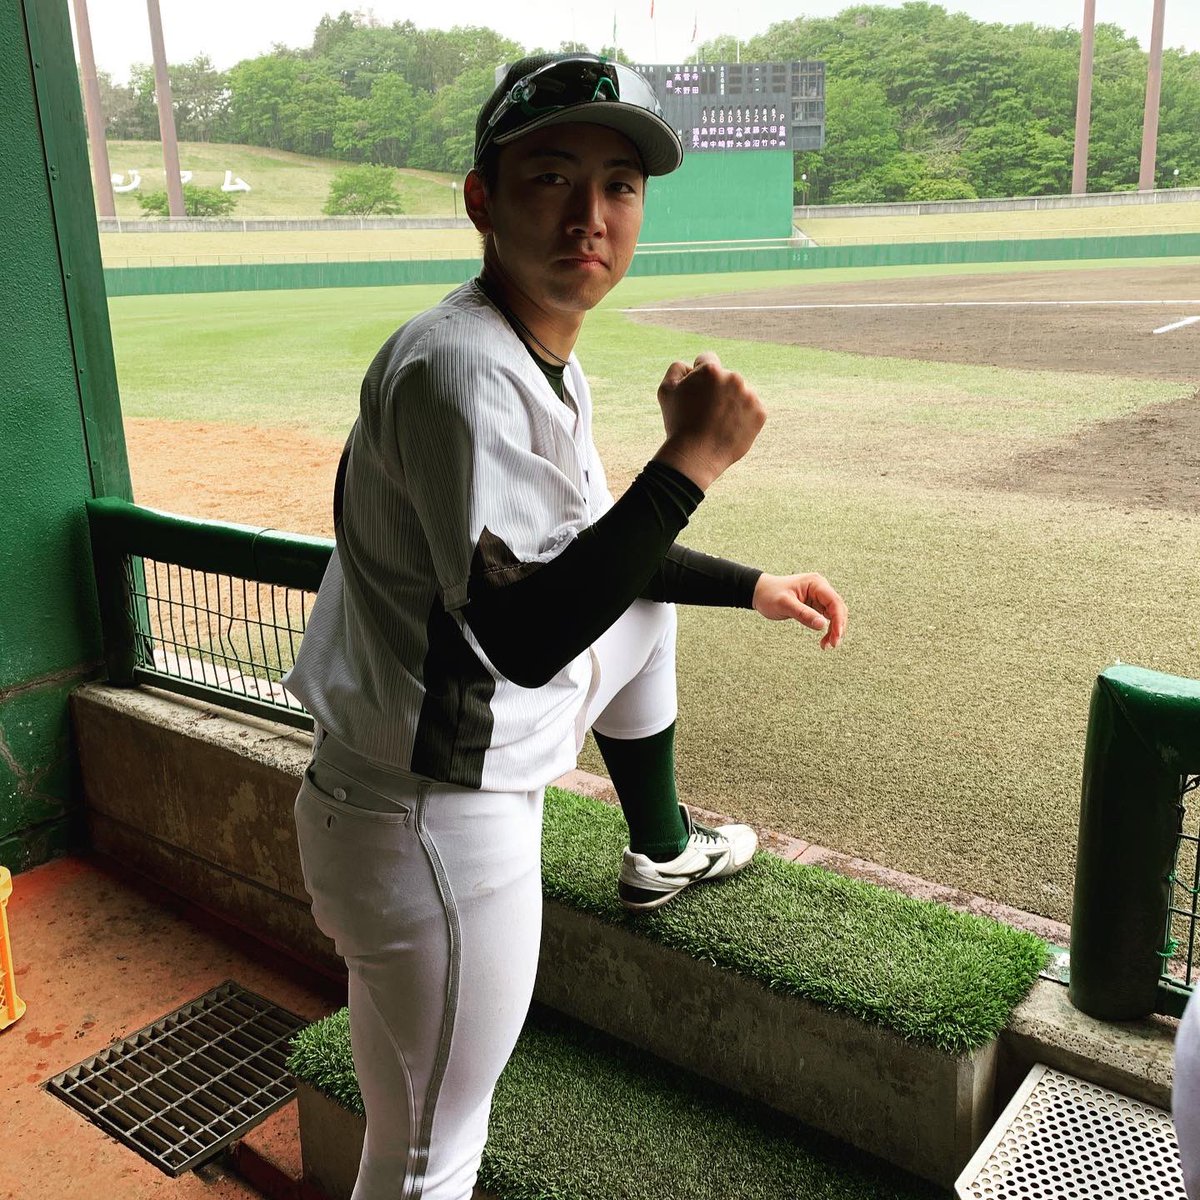 石巻専修大学 硬式野球部 Isu Baseball28 Twitter